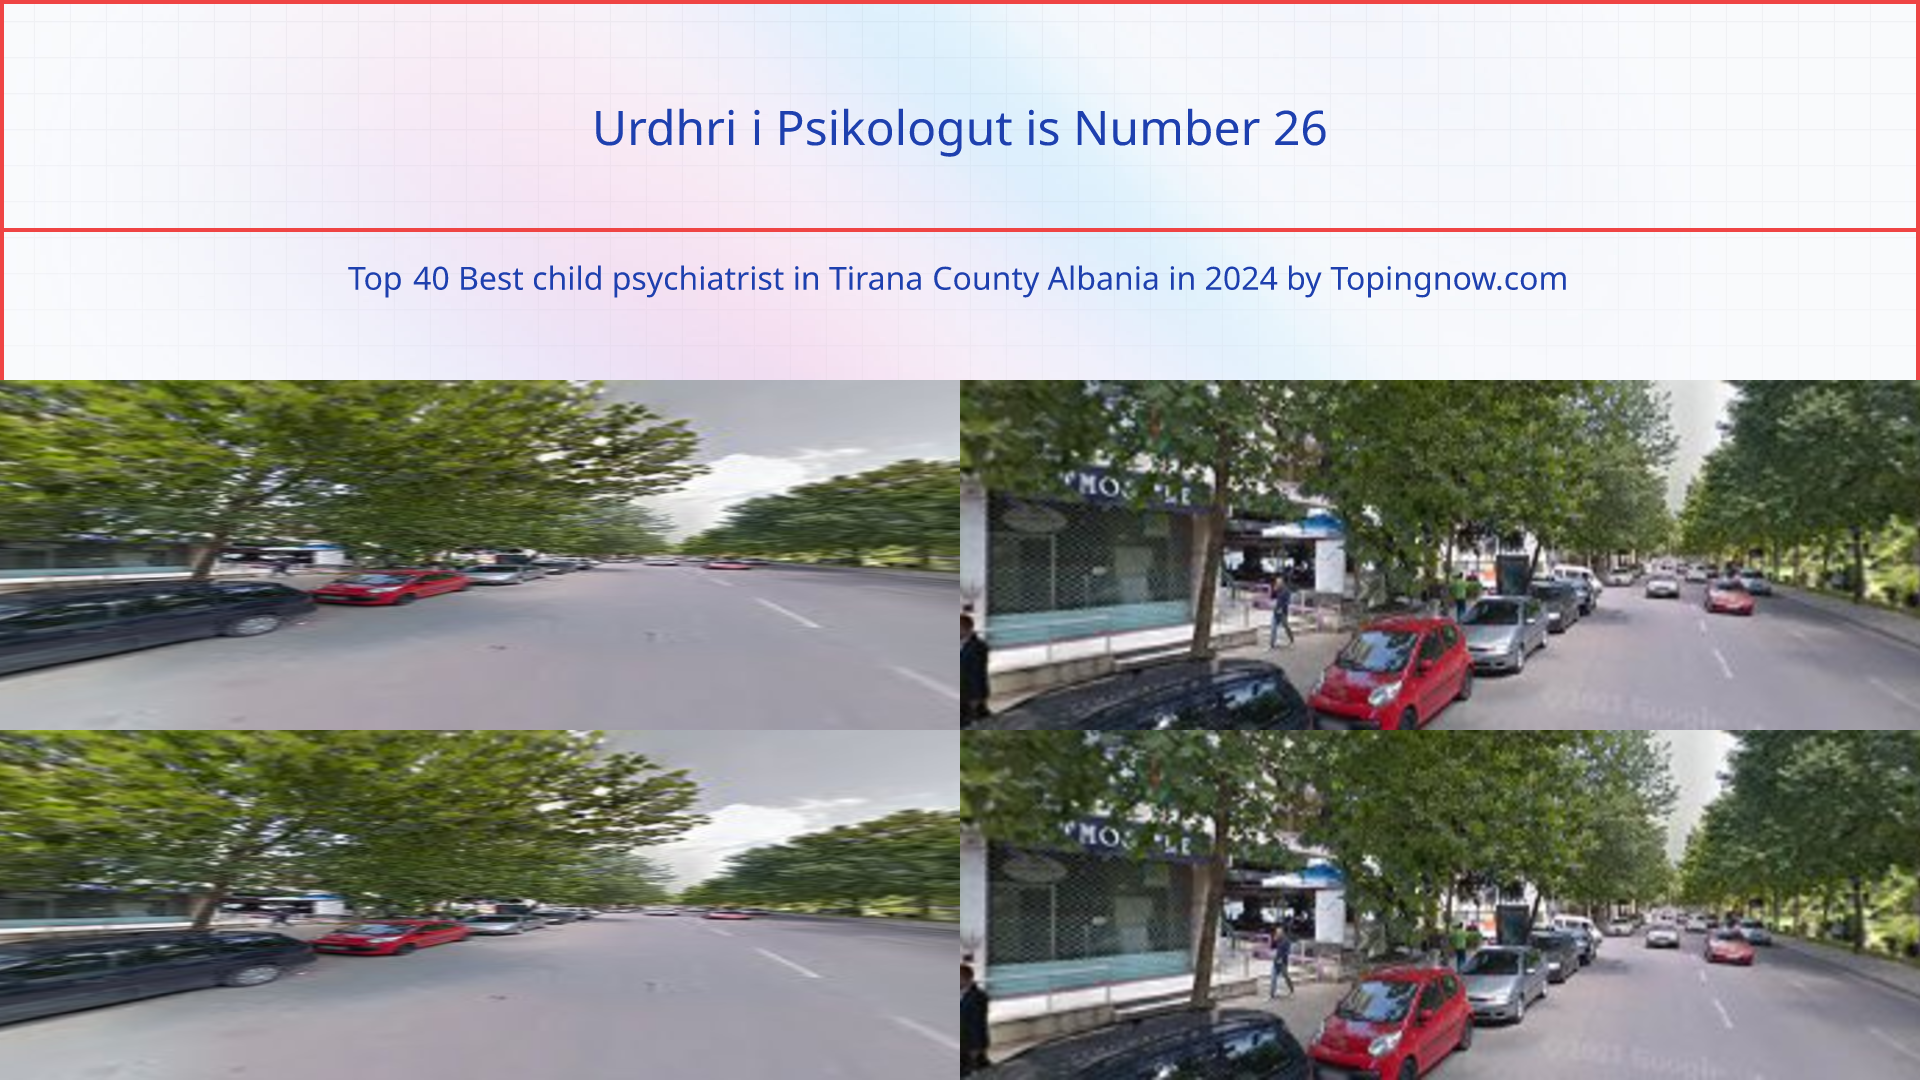 Urdhri i Psikologut: Top 40 Best child psychiatrist in Tirana County Albania in 2024